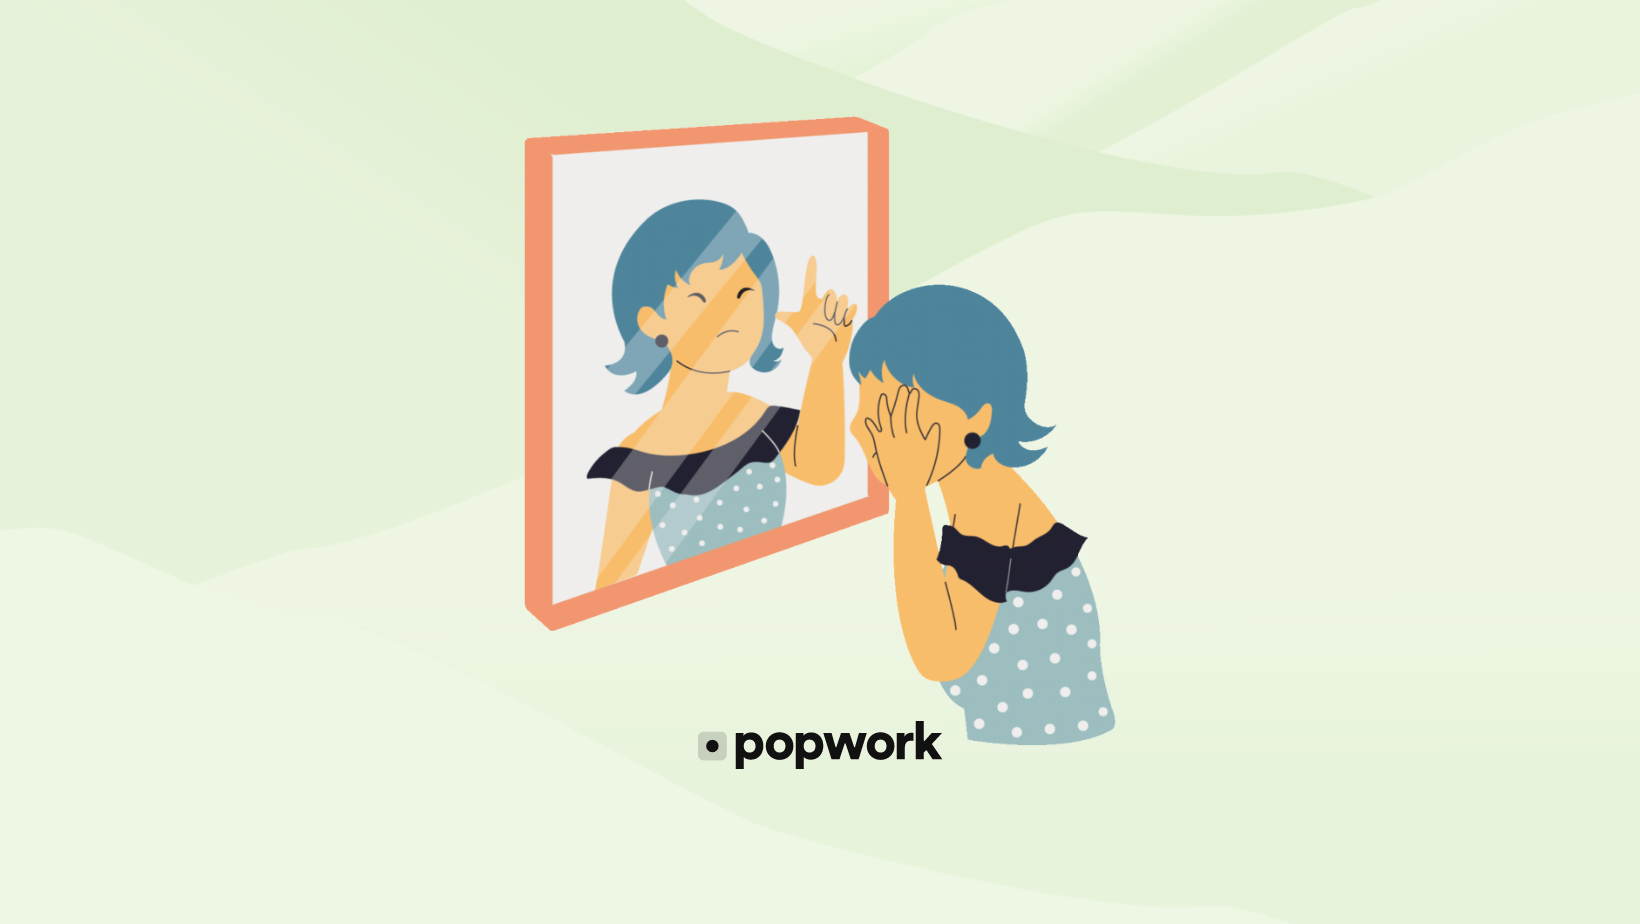 imposter syndrome - Powpork